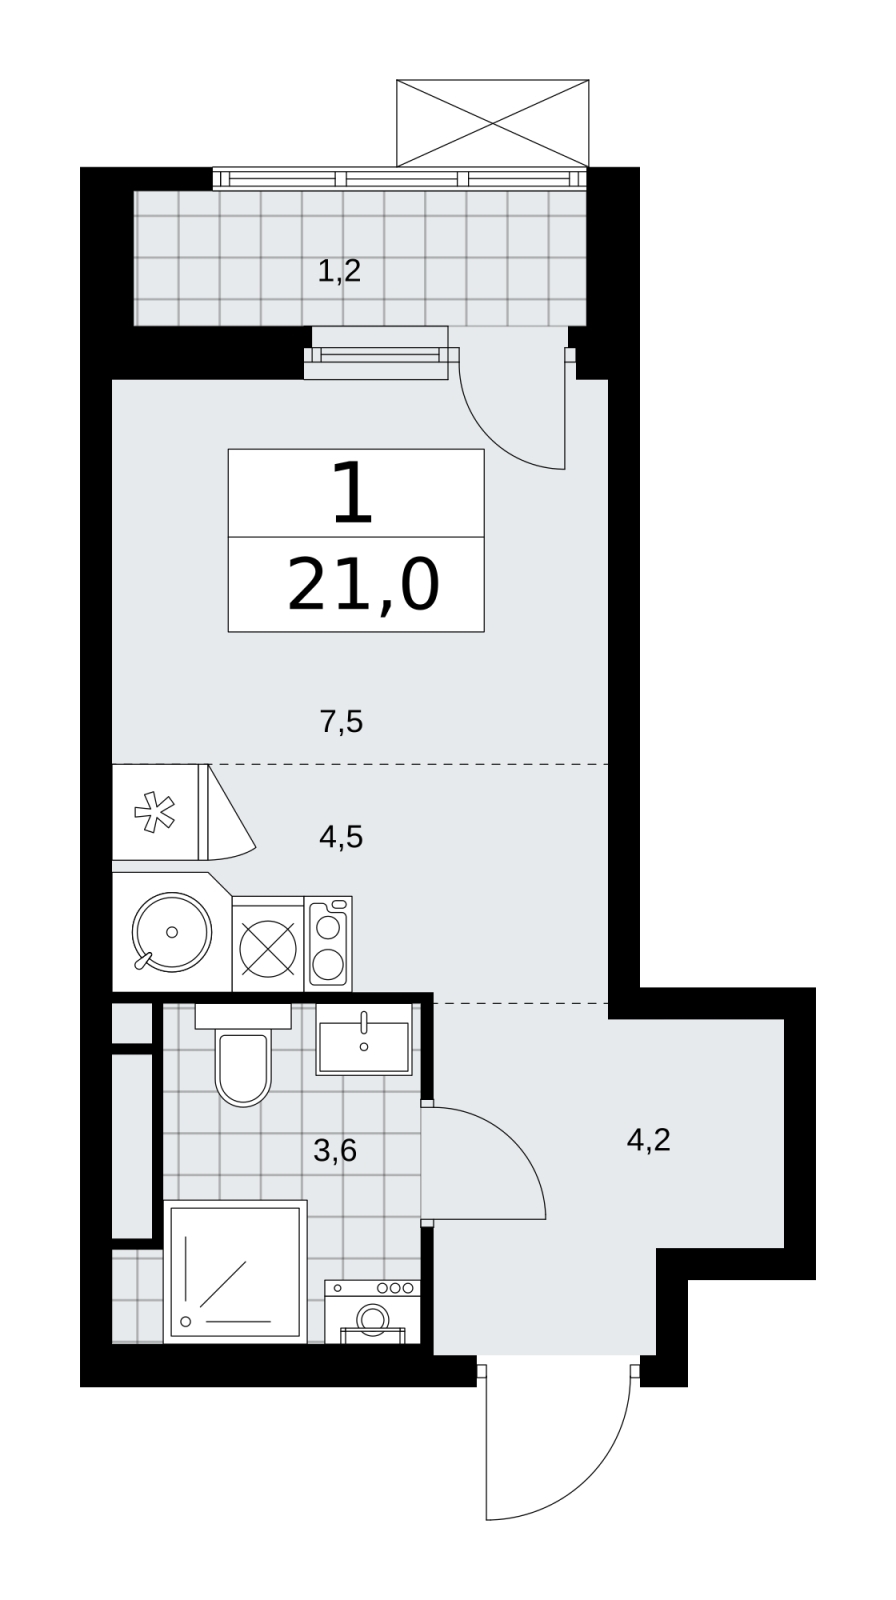 Продается просторная 1-комн. квартира-студия в новом ЖК, недалеко от метро